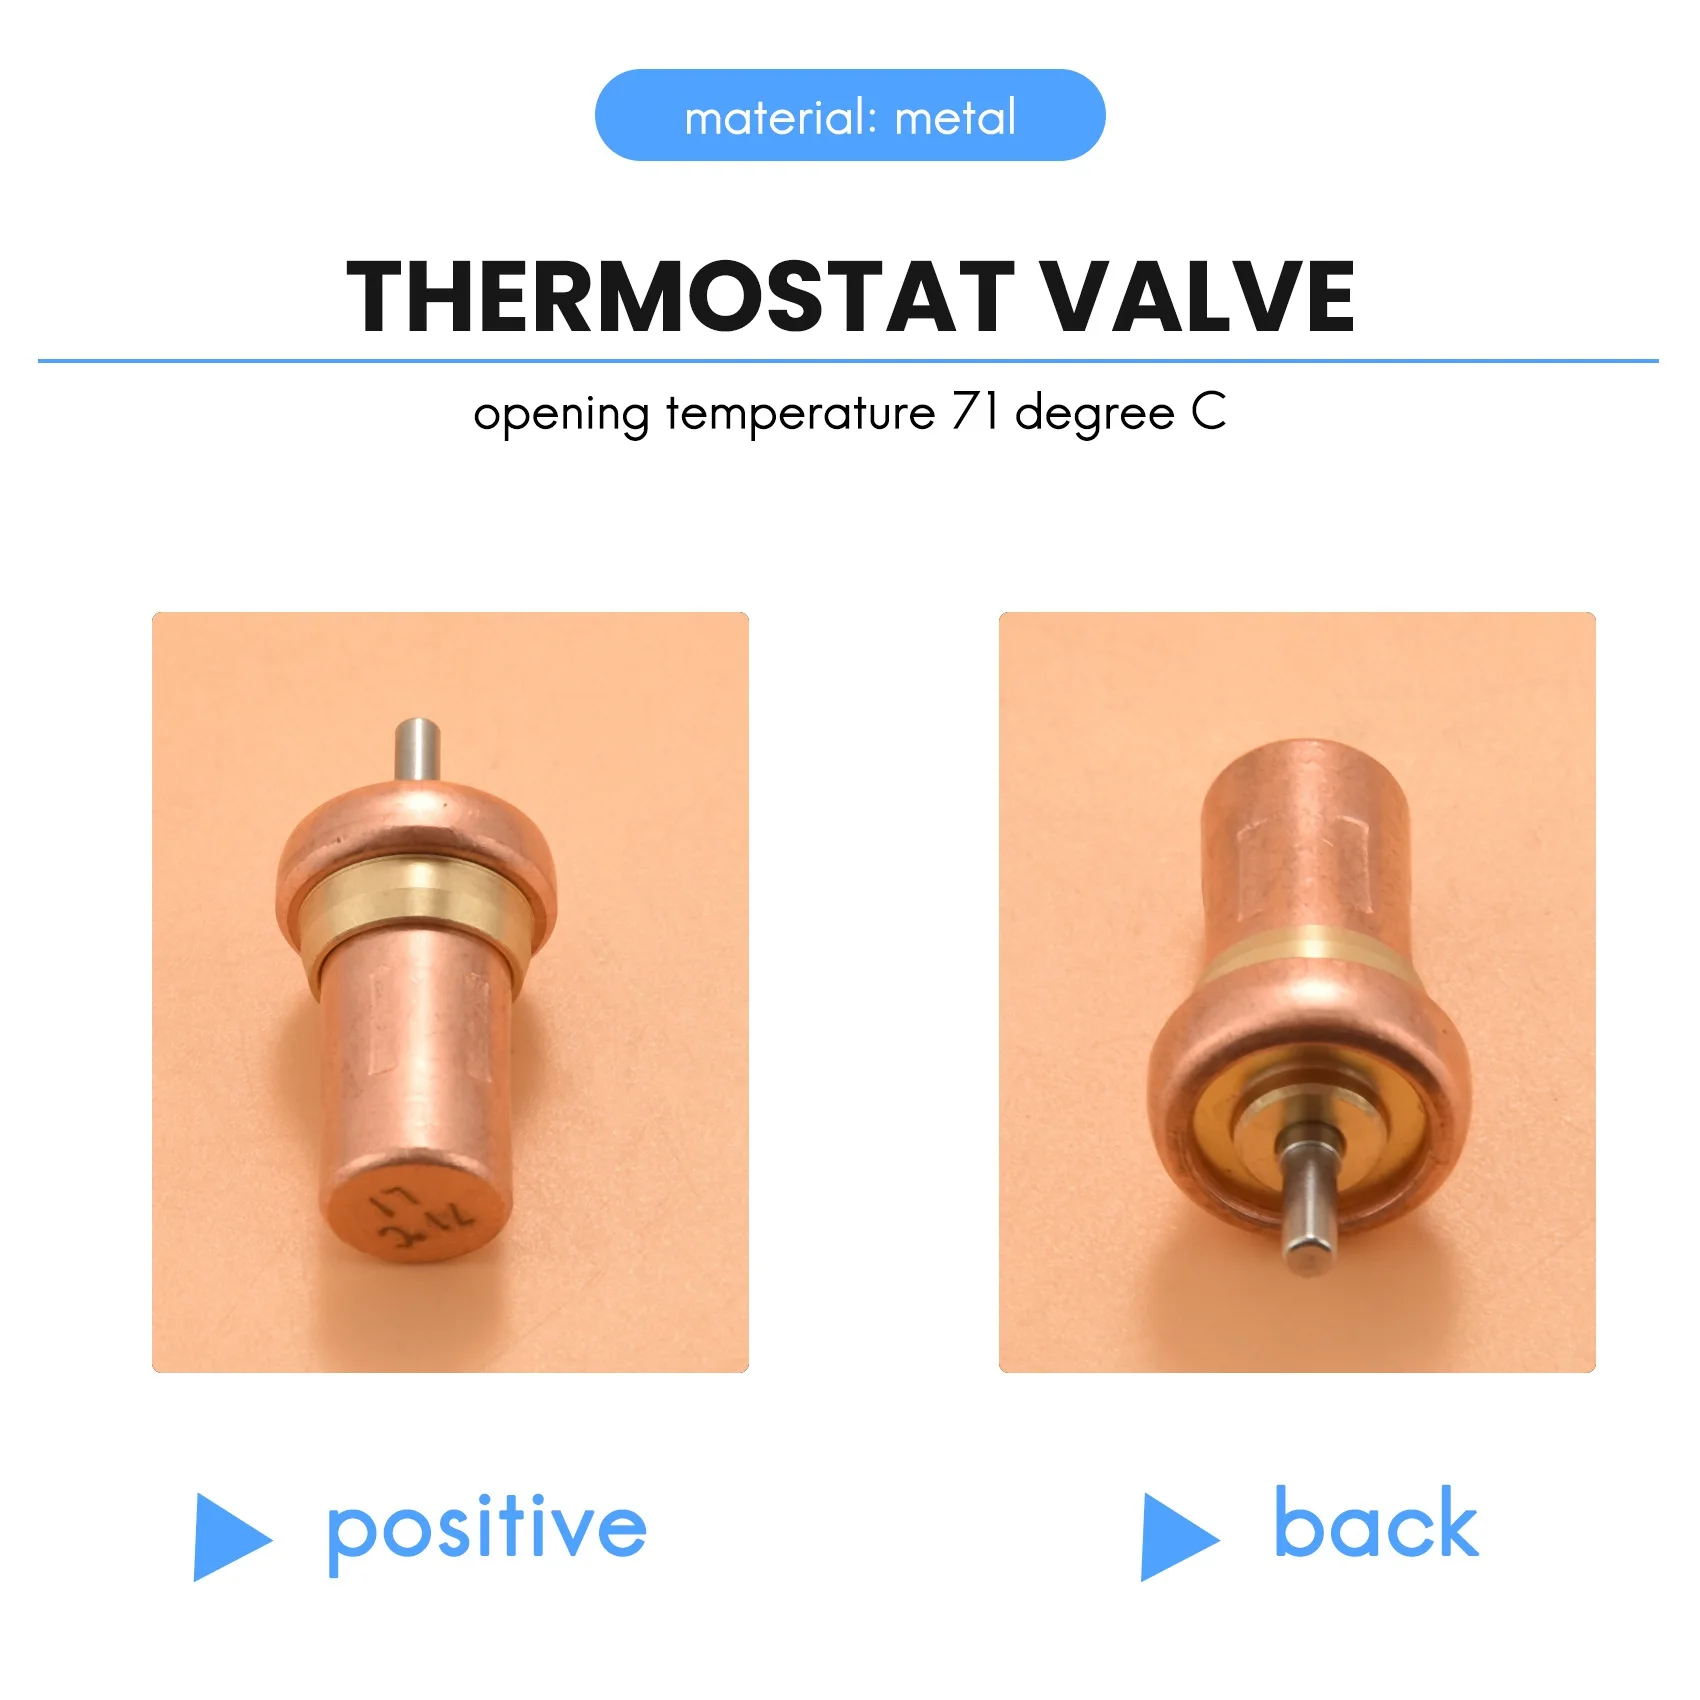 Sostituzione VMC termostato valvola nucleo apertura temperatura 71 gradi C